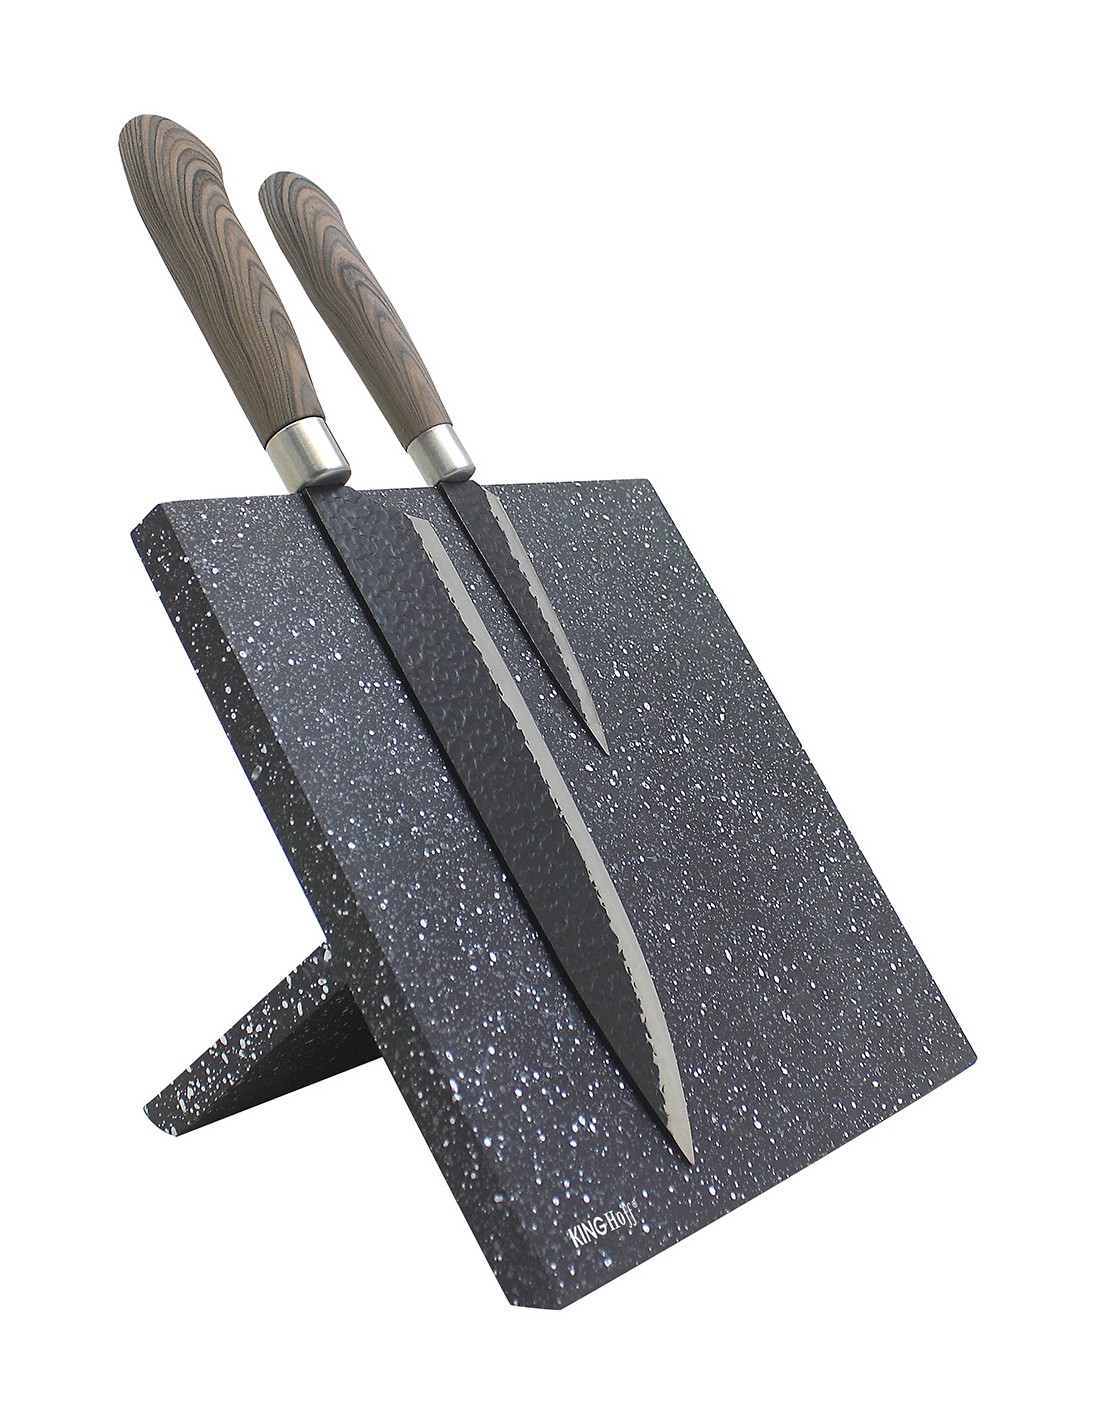 Magnetic Knife Block Holder - Magnosphere